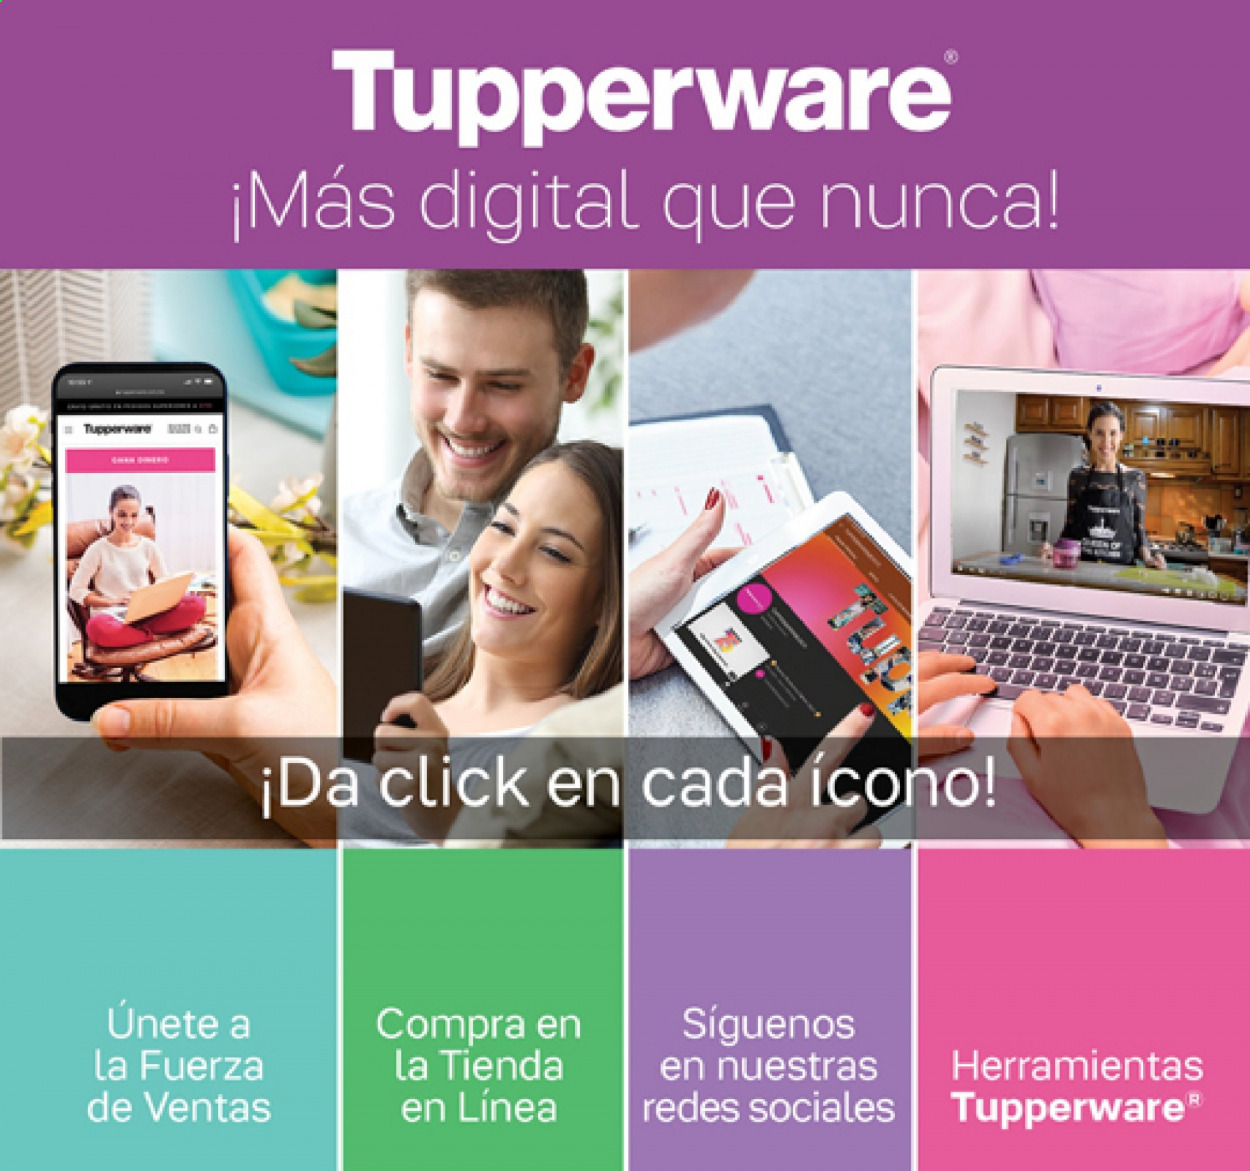 Catálogo Tupperware - 16.8.2021 - 5.9.2021.